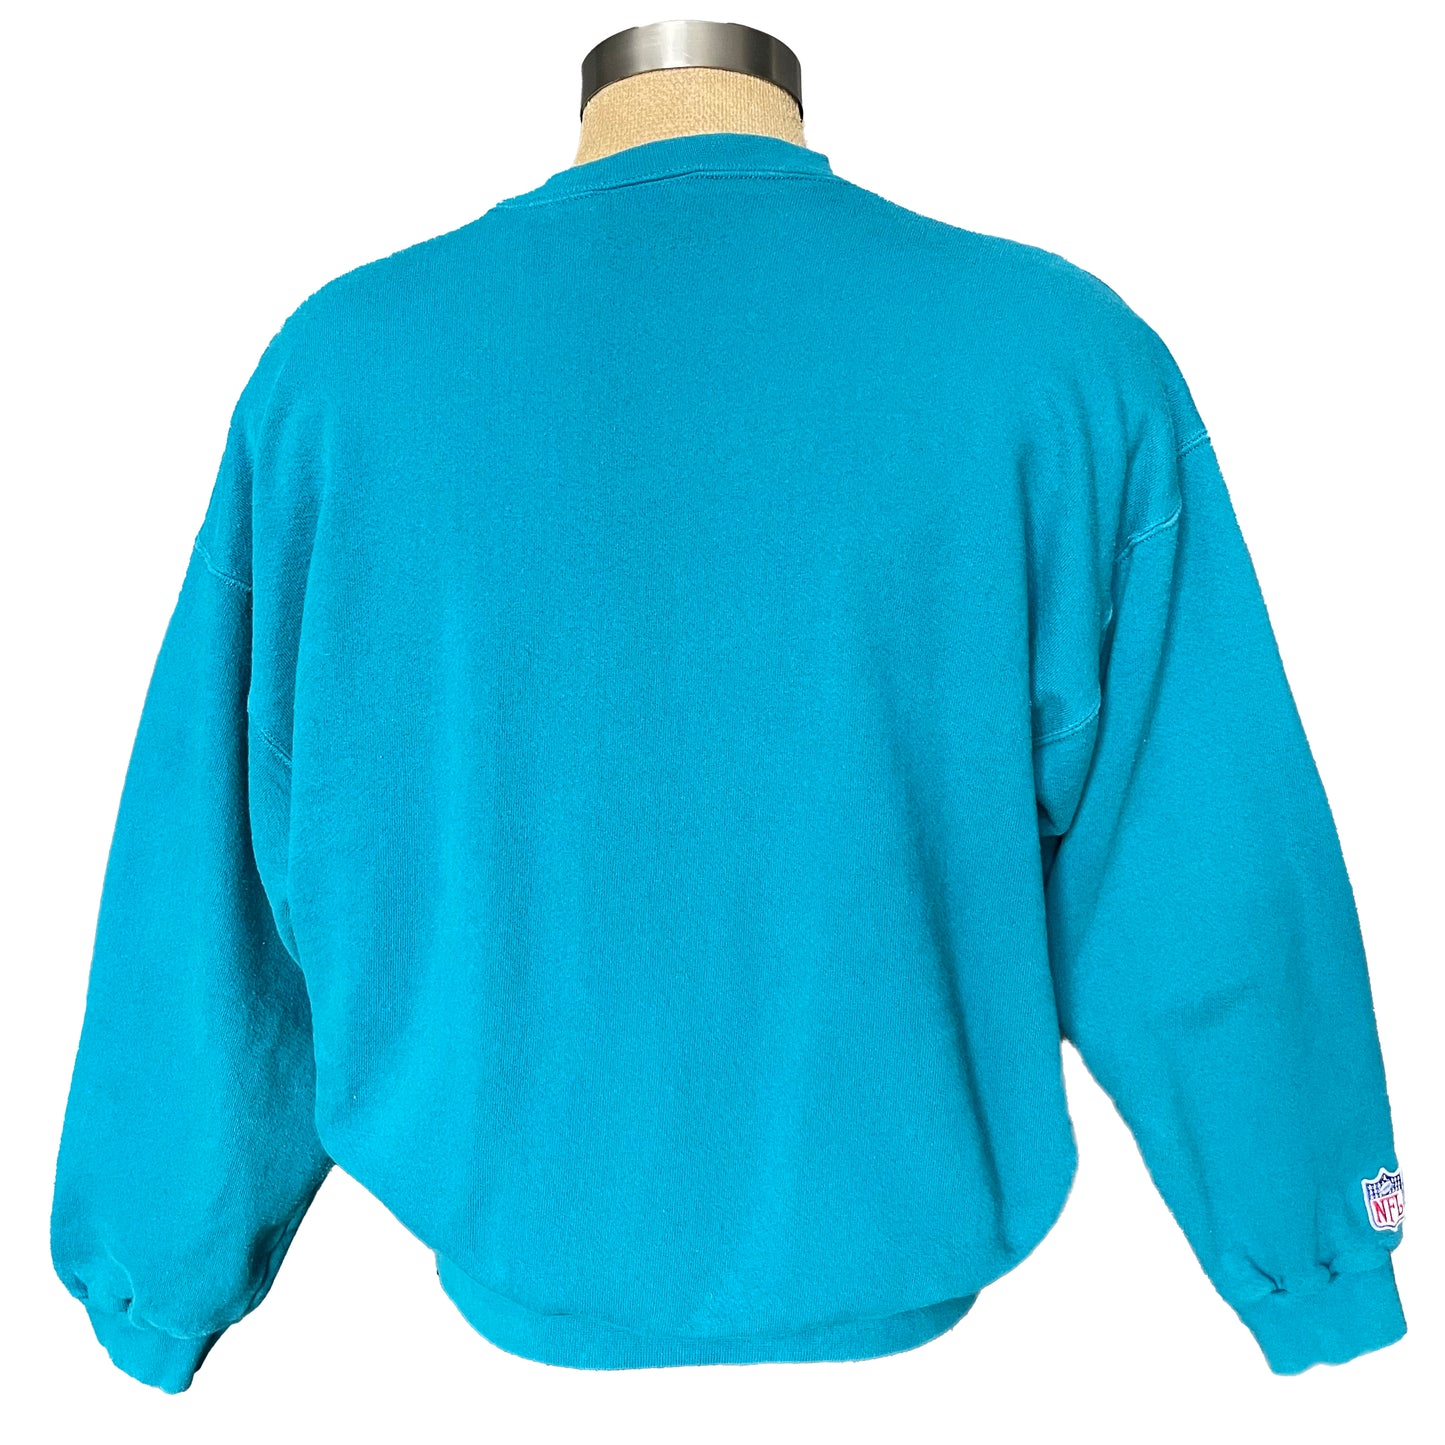 Vintage Jacksonville Jaguars embroidered sweatshirt size LARGE